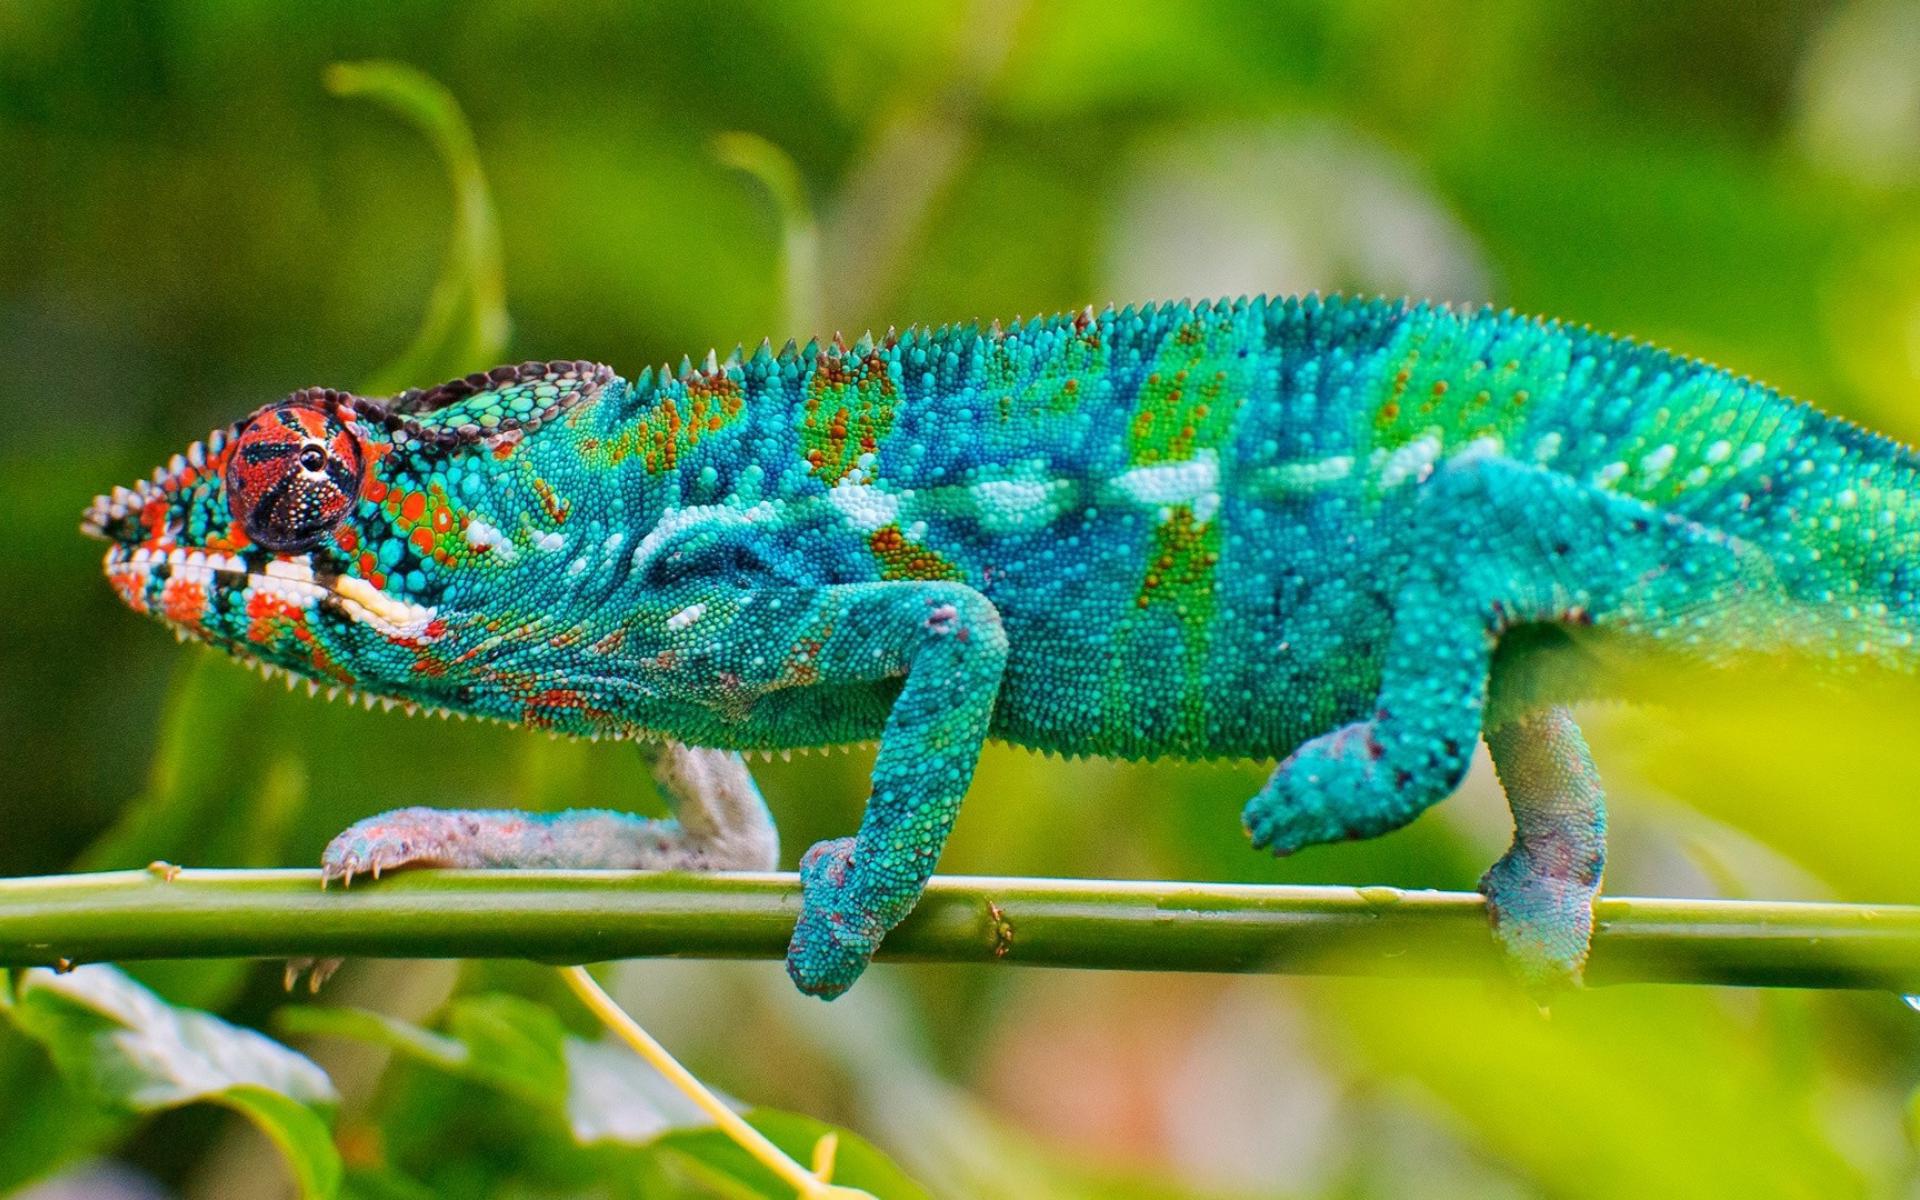 Blue Chameleon Lizard Desktop HD Wallpaper For Mobile Phones